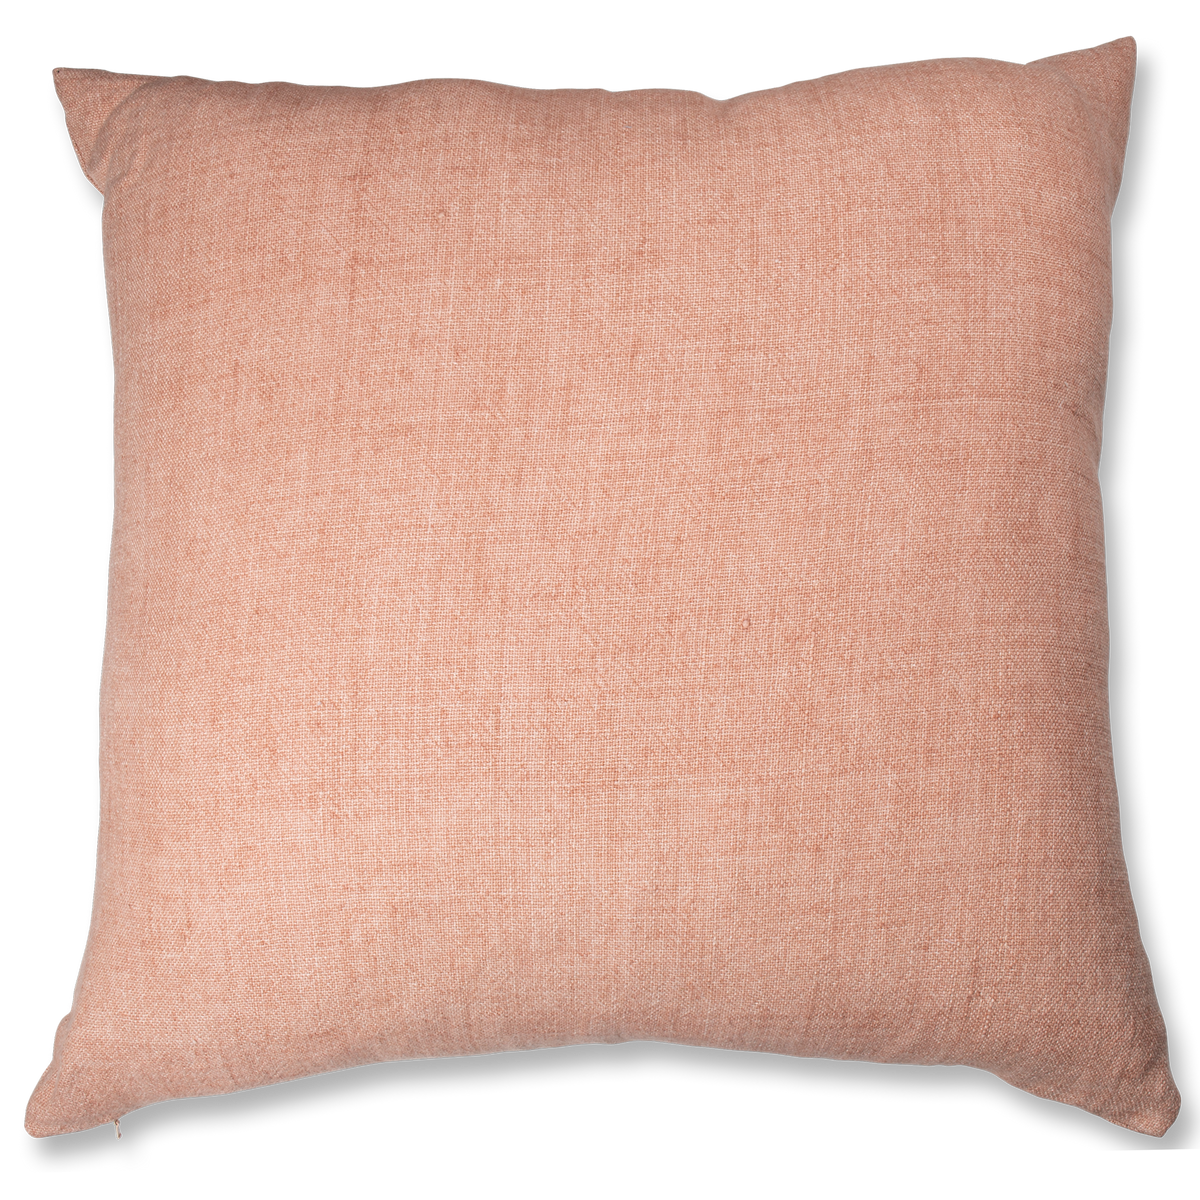 Heavyweight Linen Pillow